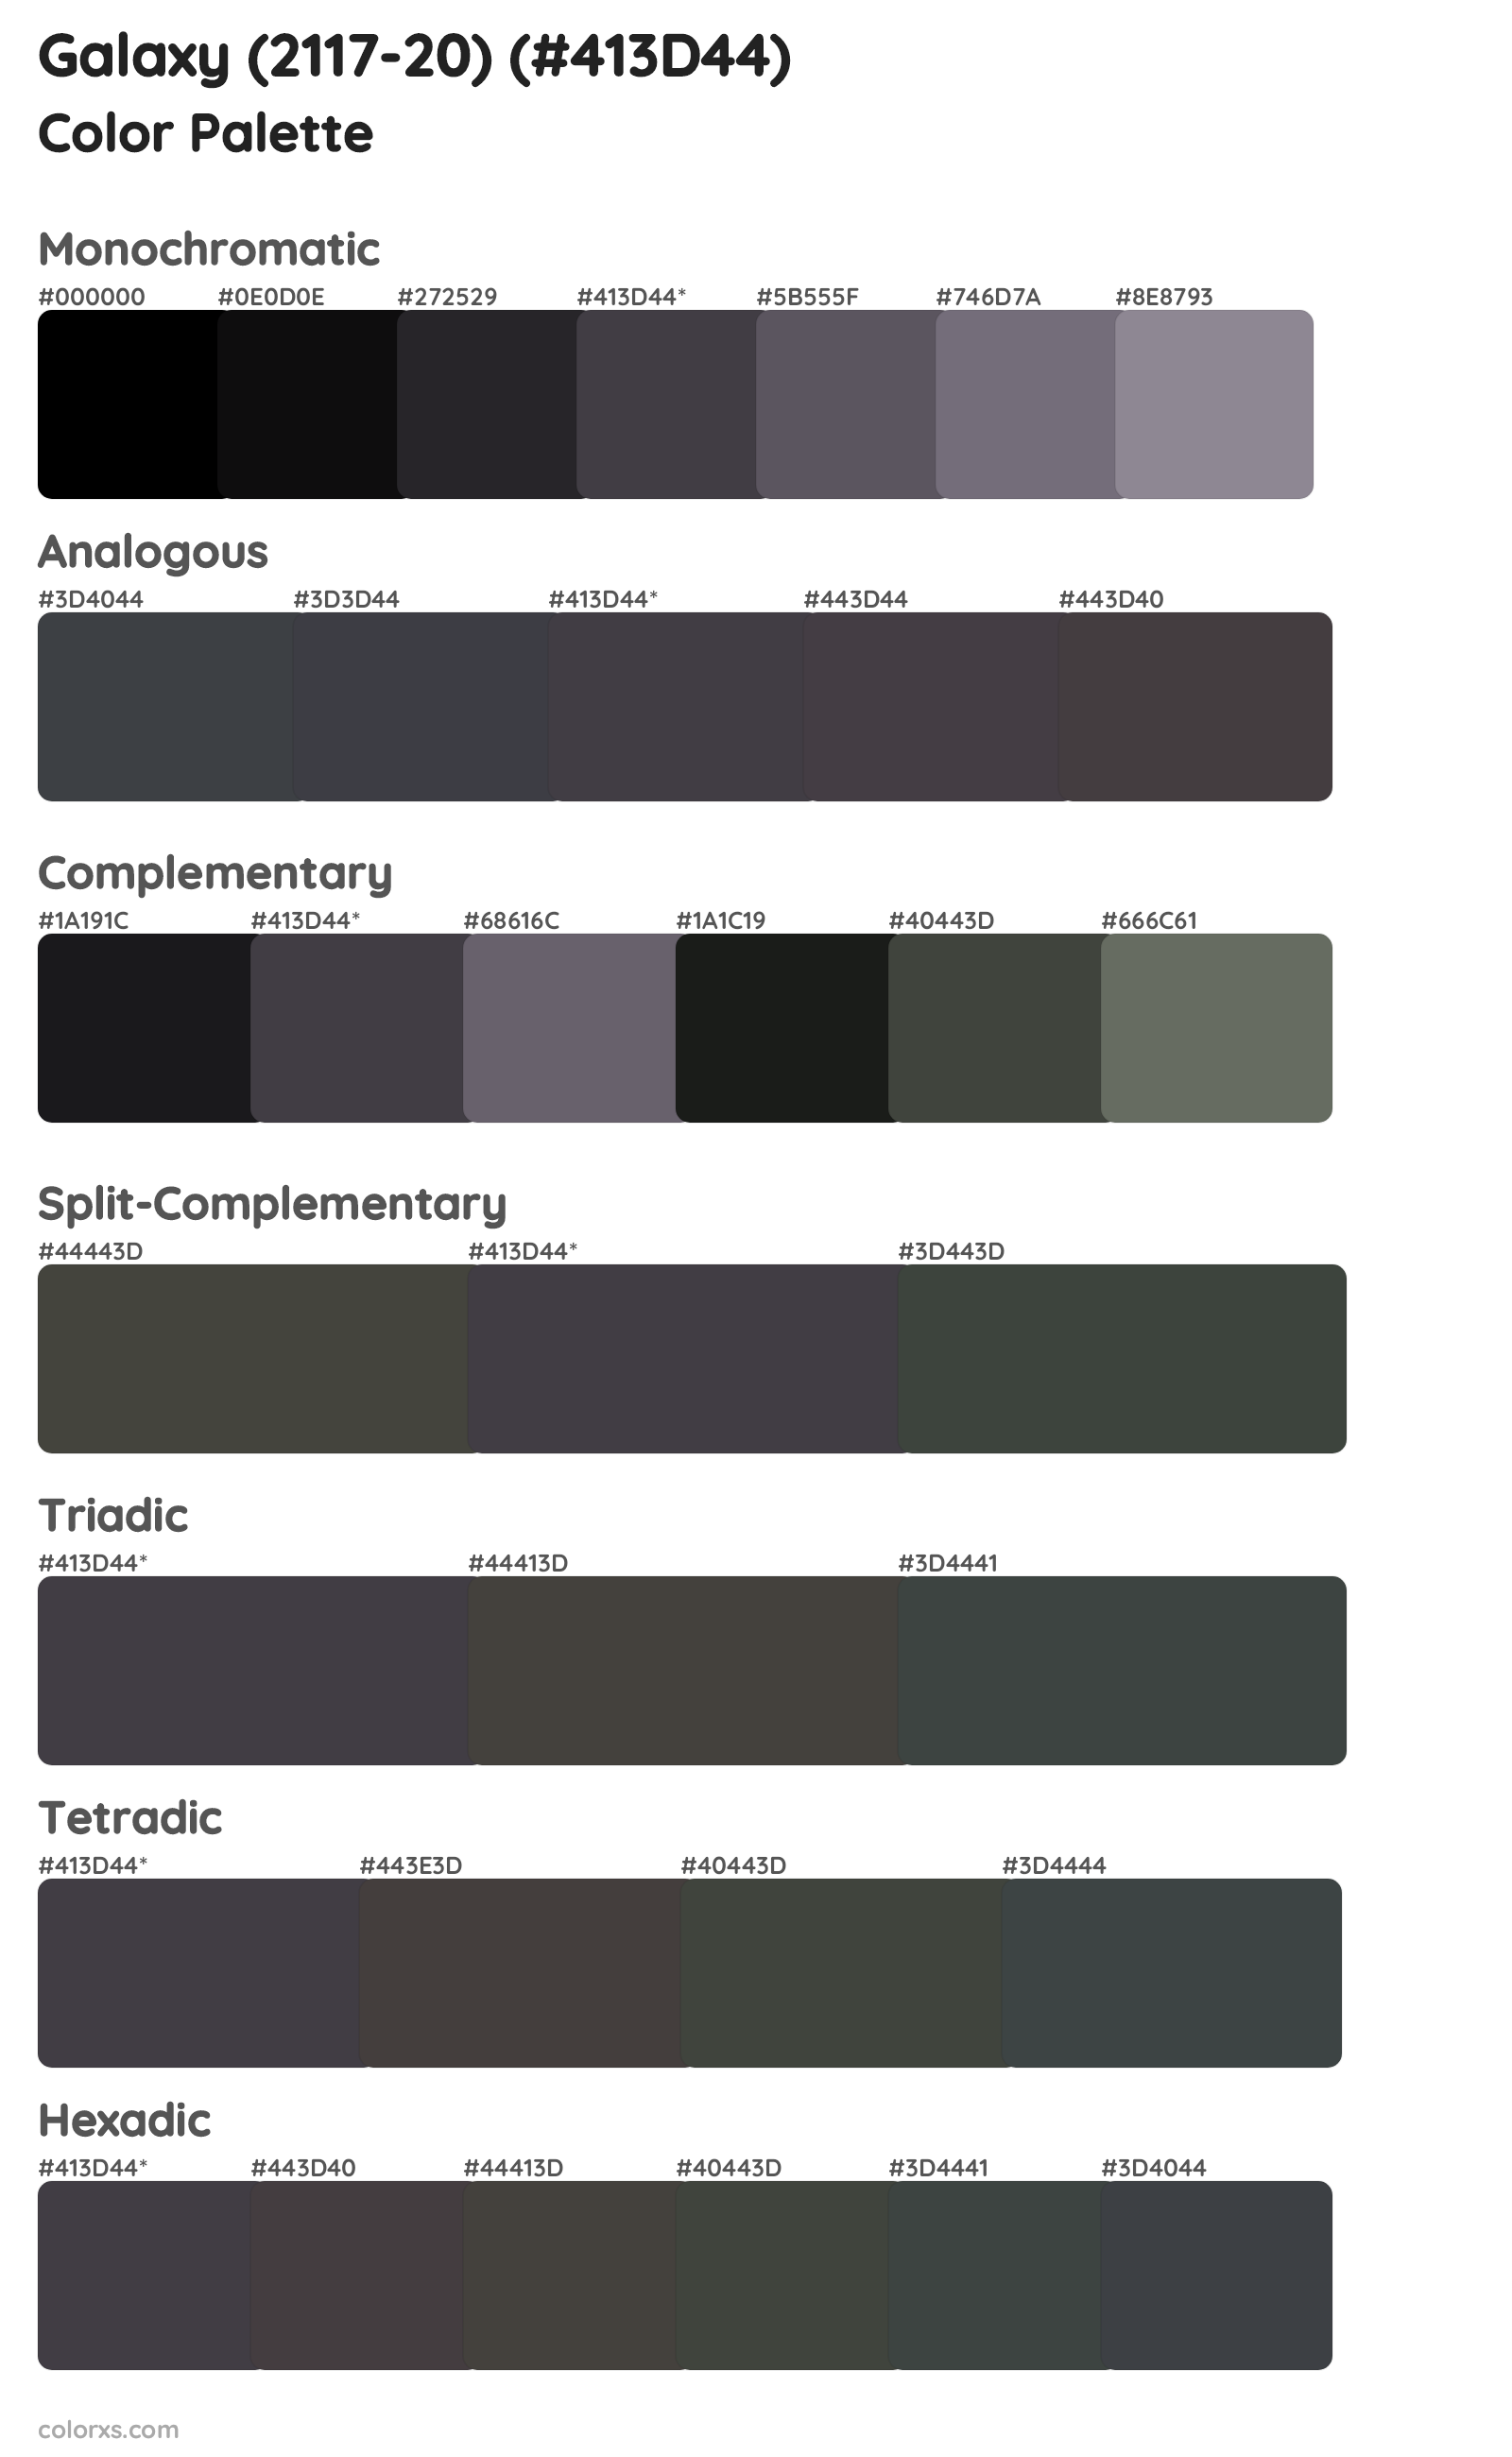 Galaxy (2117-20) Color Scheme Palettes